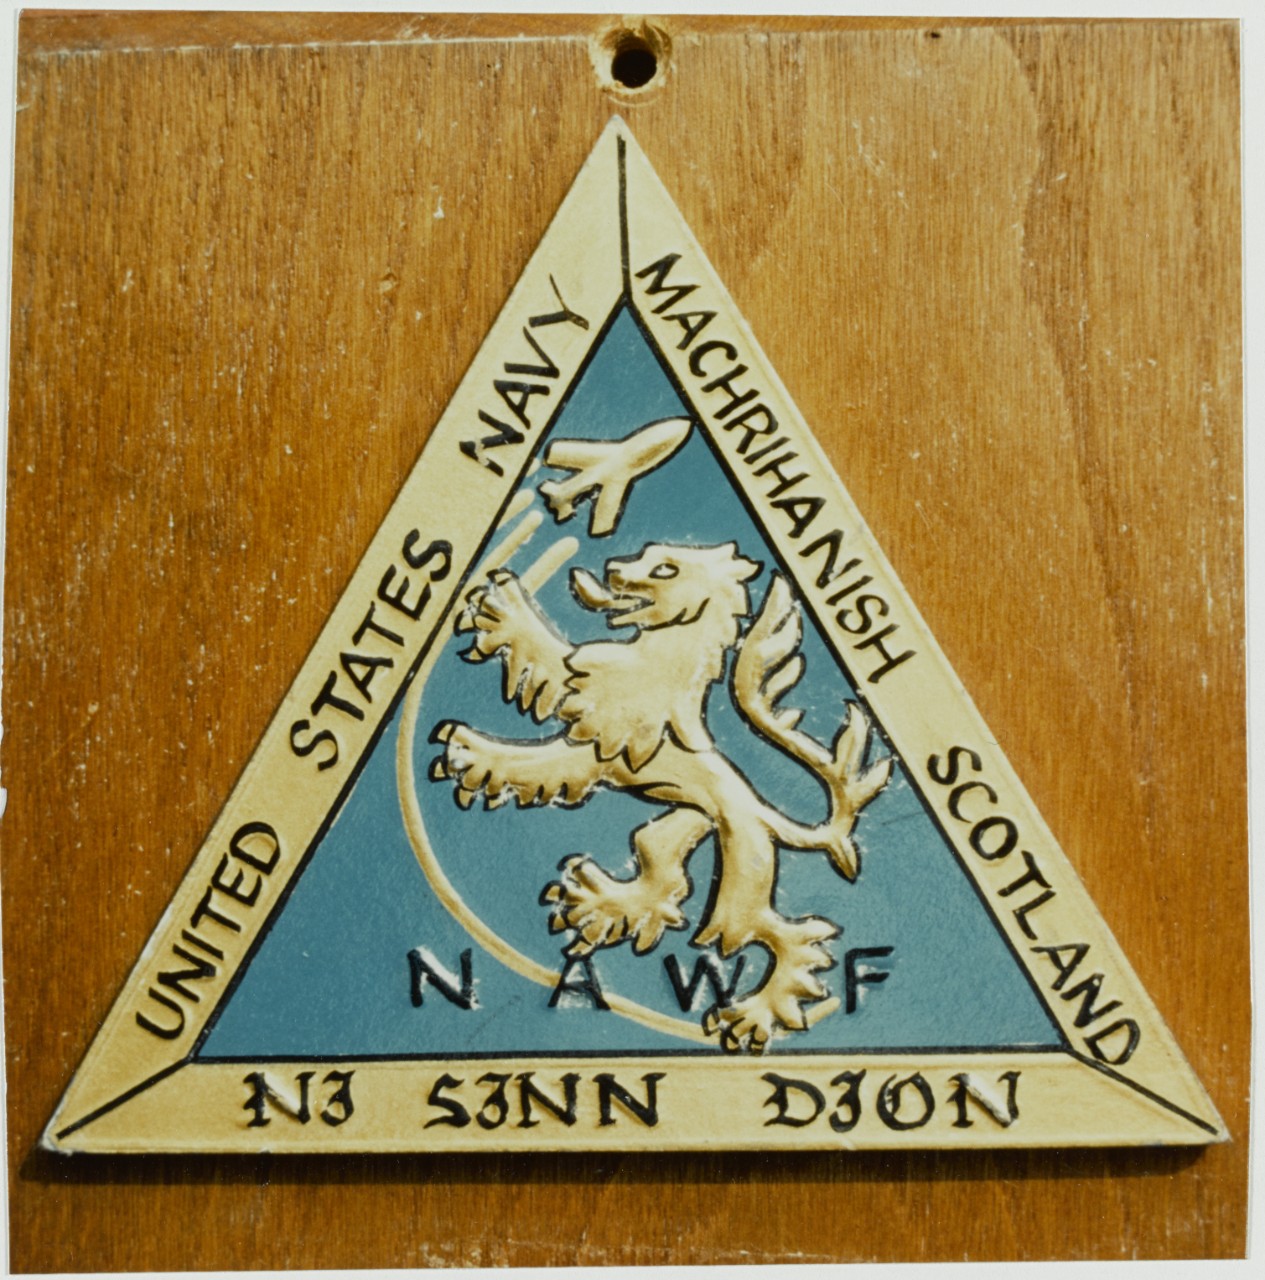 Insignia: Naval Air Weapons Facility, Machrihanish, Scotland. May 26, 1969